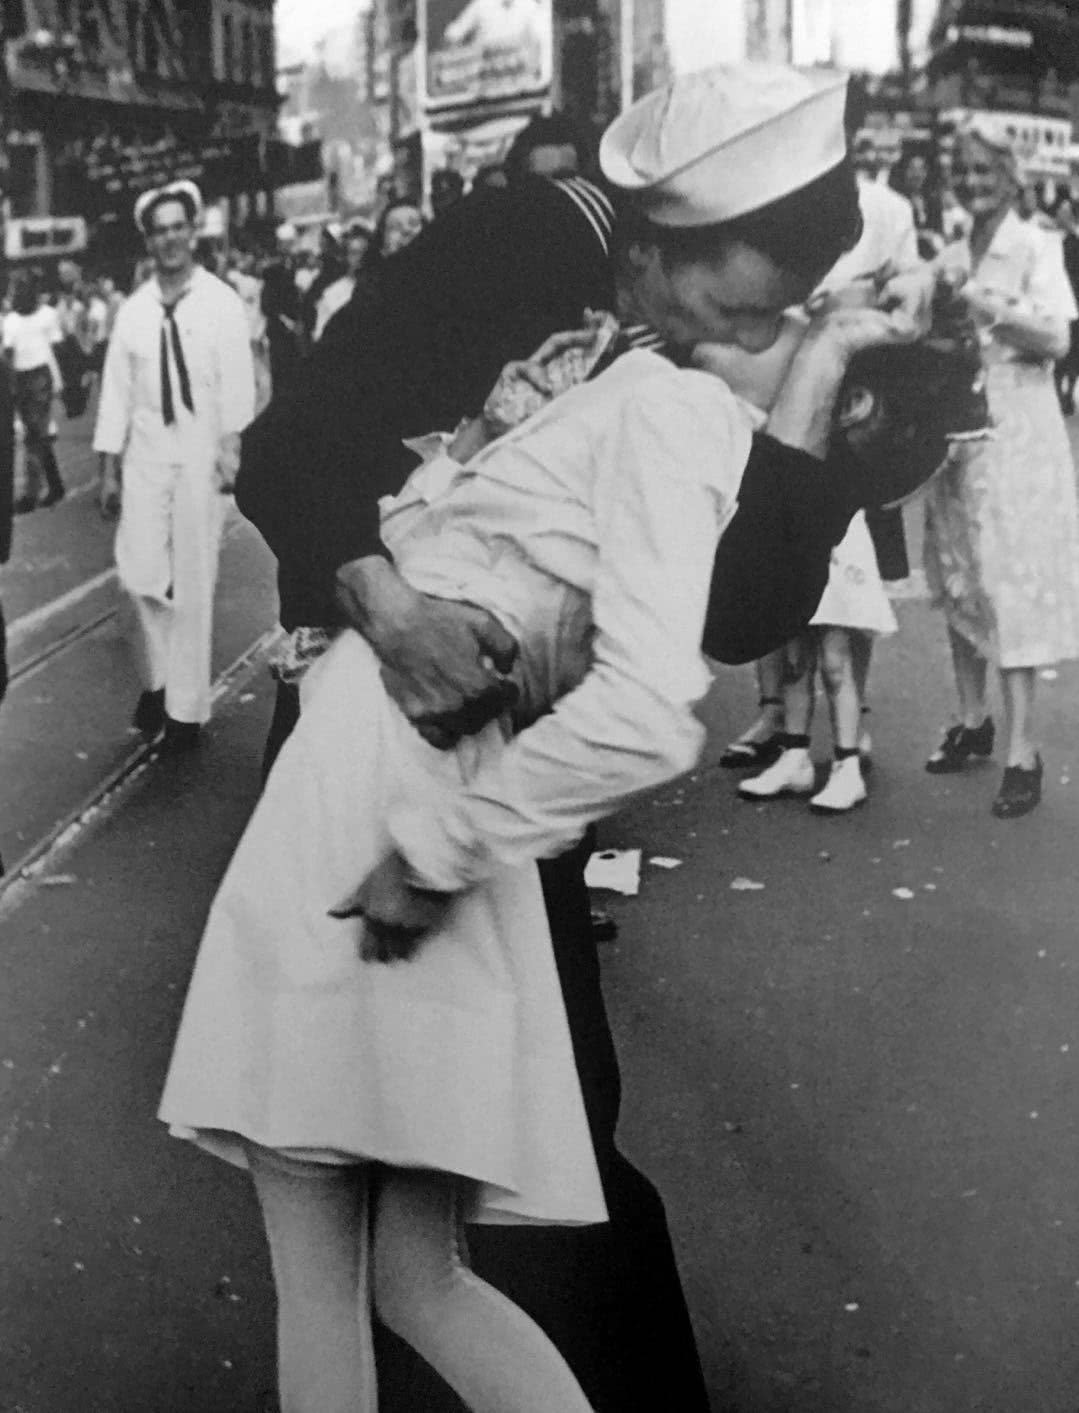 这张照片叫做胜利之吻,在二战胜利之后,在胜利的热潮下,一名美国